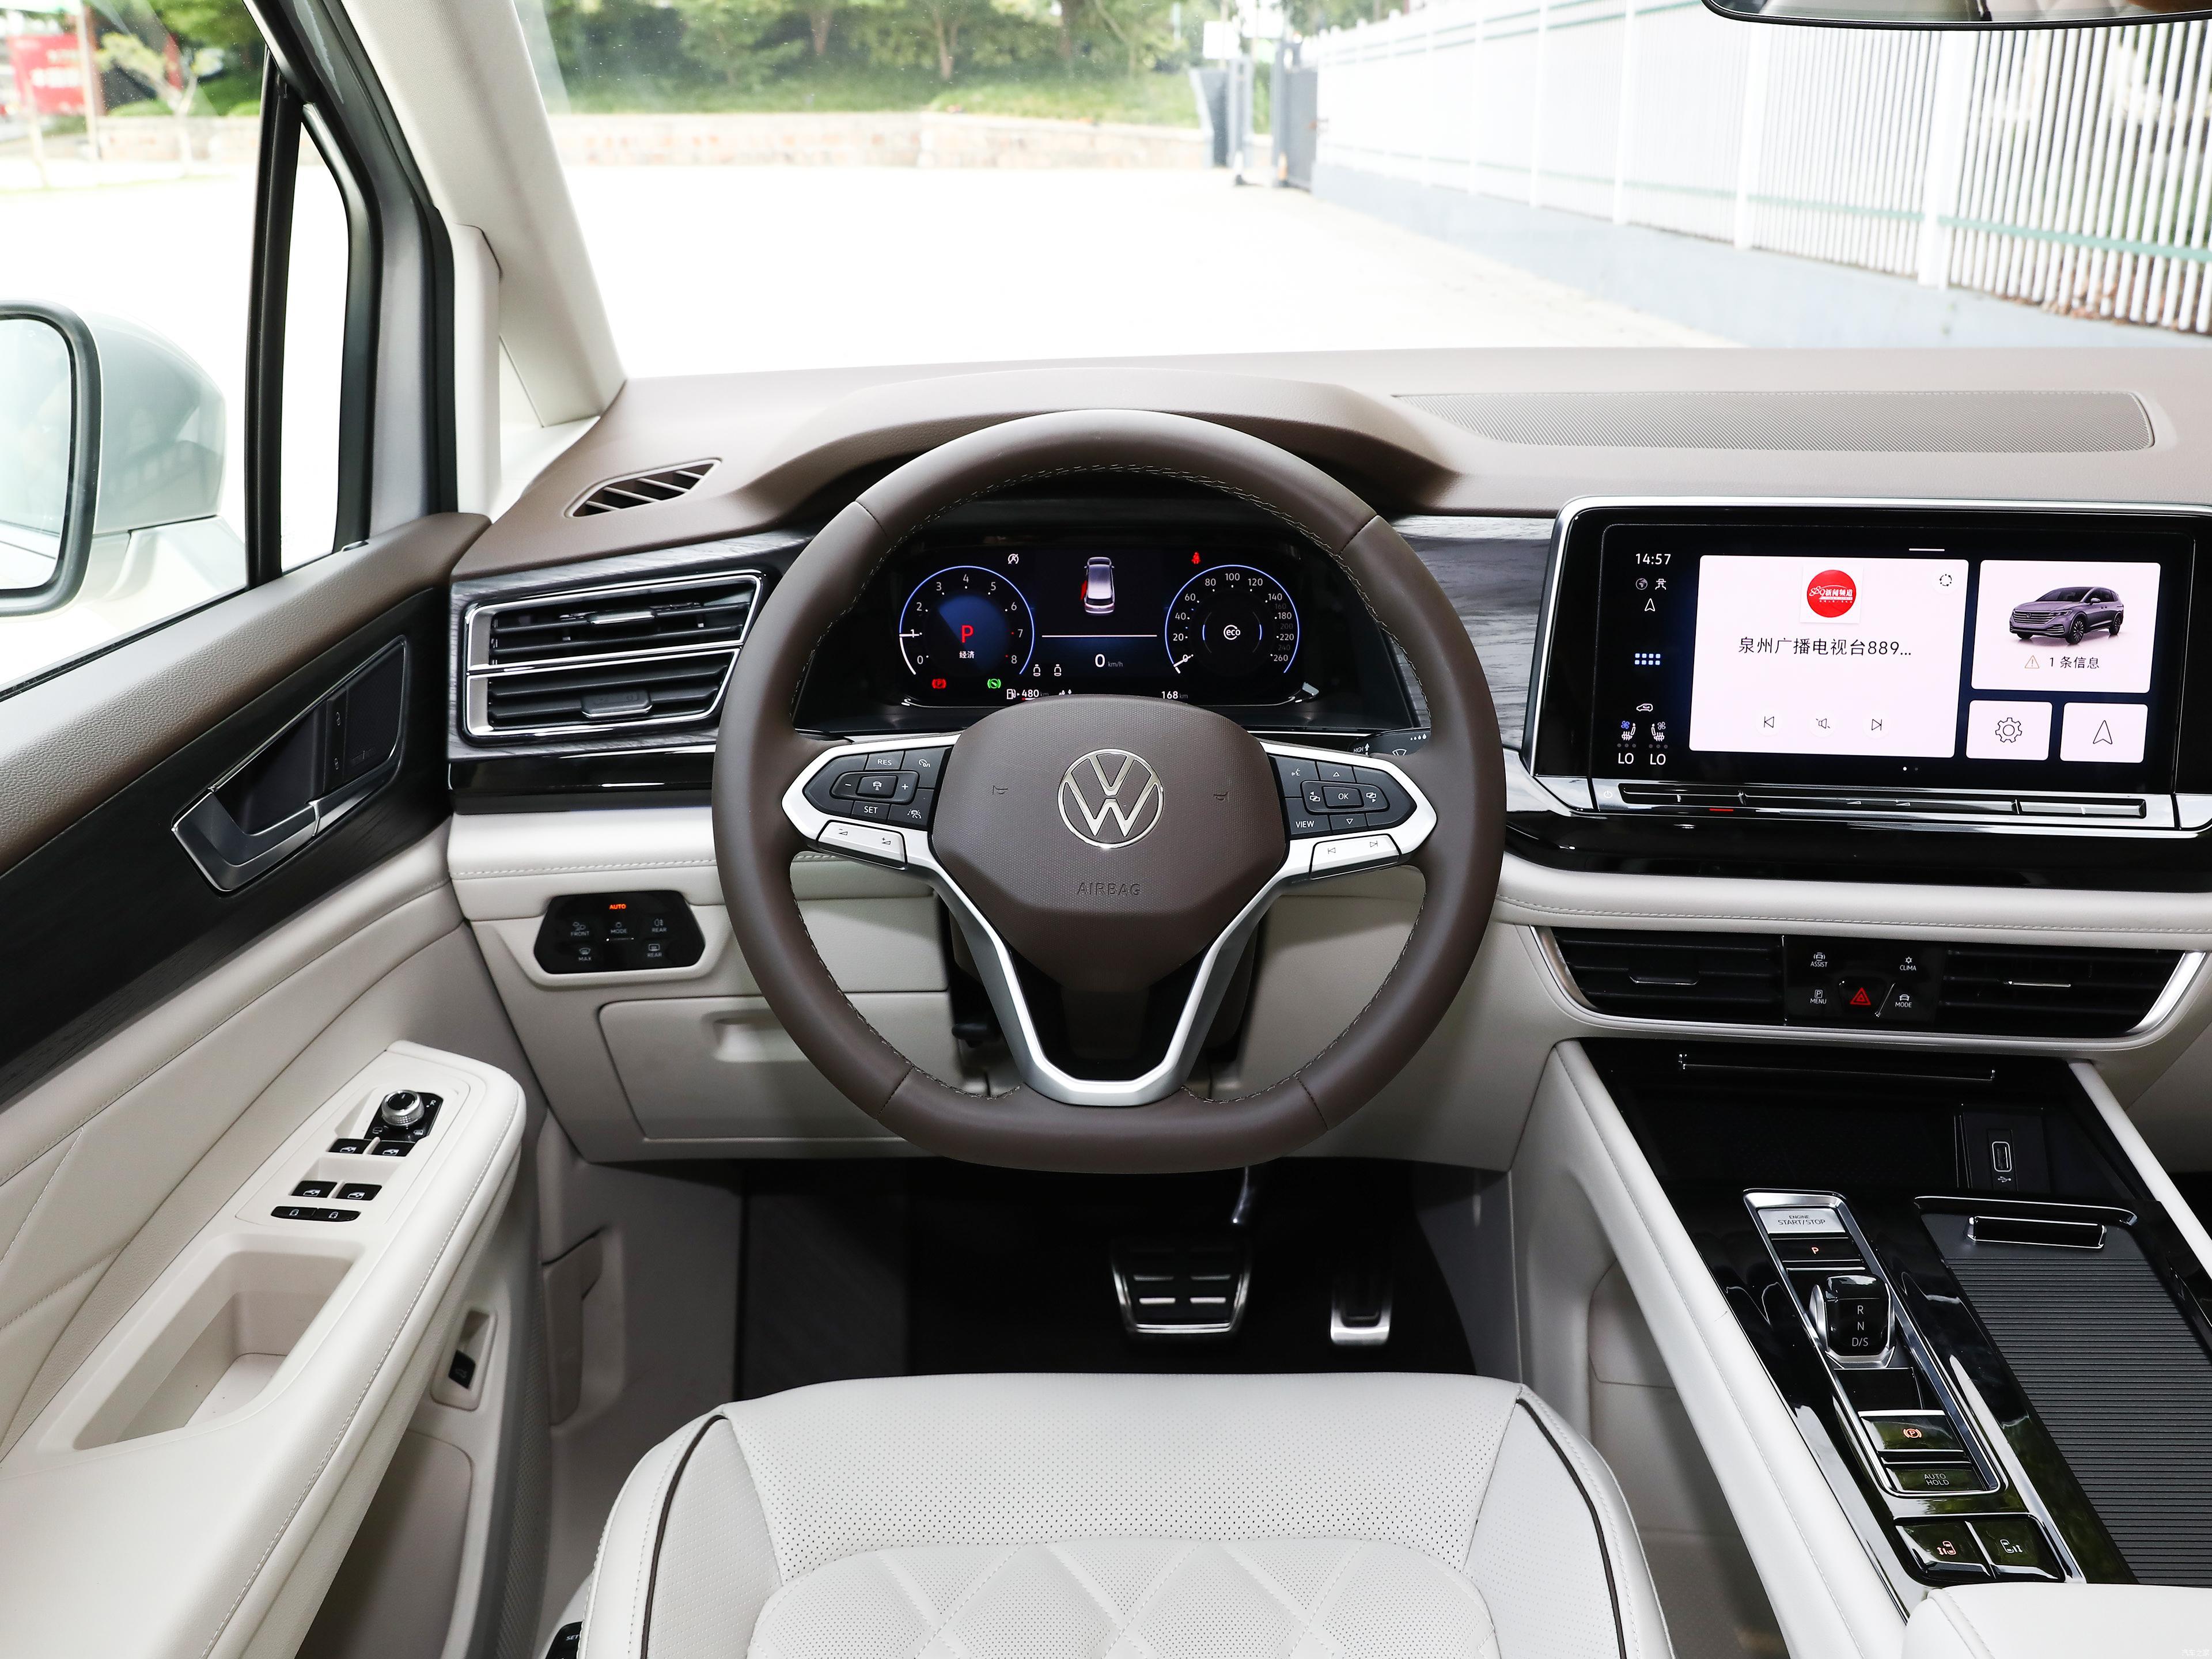 SAIC VW Viloran 2023 2024 Version 330TSI 380TSI 7 Seats Medium to Large MPV 2.0T L4 Petrol Gasoline Vehicle